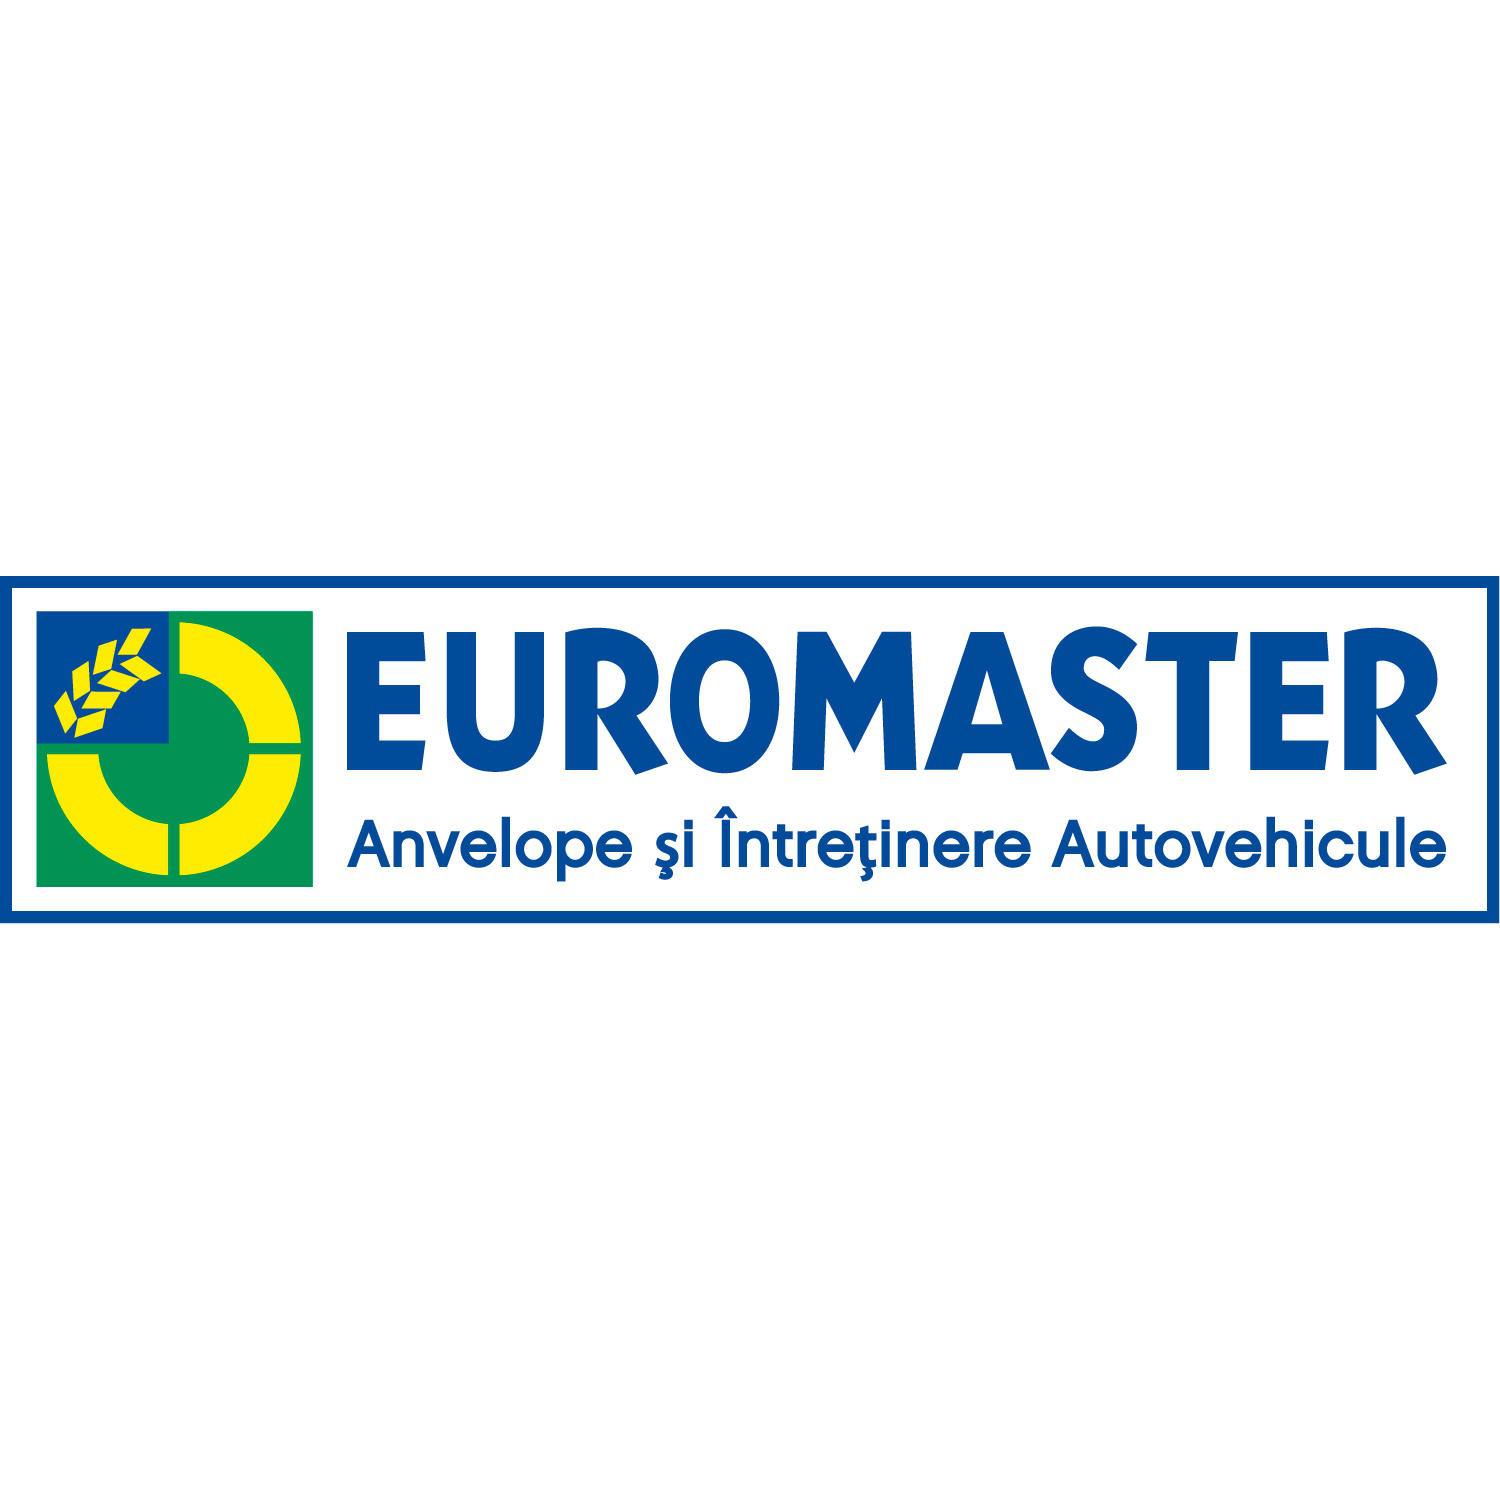 Rely on Alternative Perceivable Euromaster Depozitul de Baterii Berceni - CAUCIUC: PRODUSE DE UZ INDUSTRIAL  (PRODUCŢIE, COMERŢ CU RIDICATA), MECANIC AUTO, VÂNZARE DE PIESE DE SCHIMB  ŞI ACCESORII PENTRU AUTOVEHICULE ŞI VEHICULE INDUSTRIALE, Bucuresti -  Euromaster